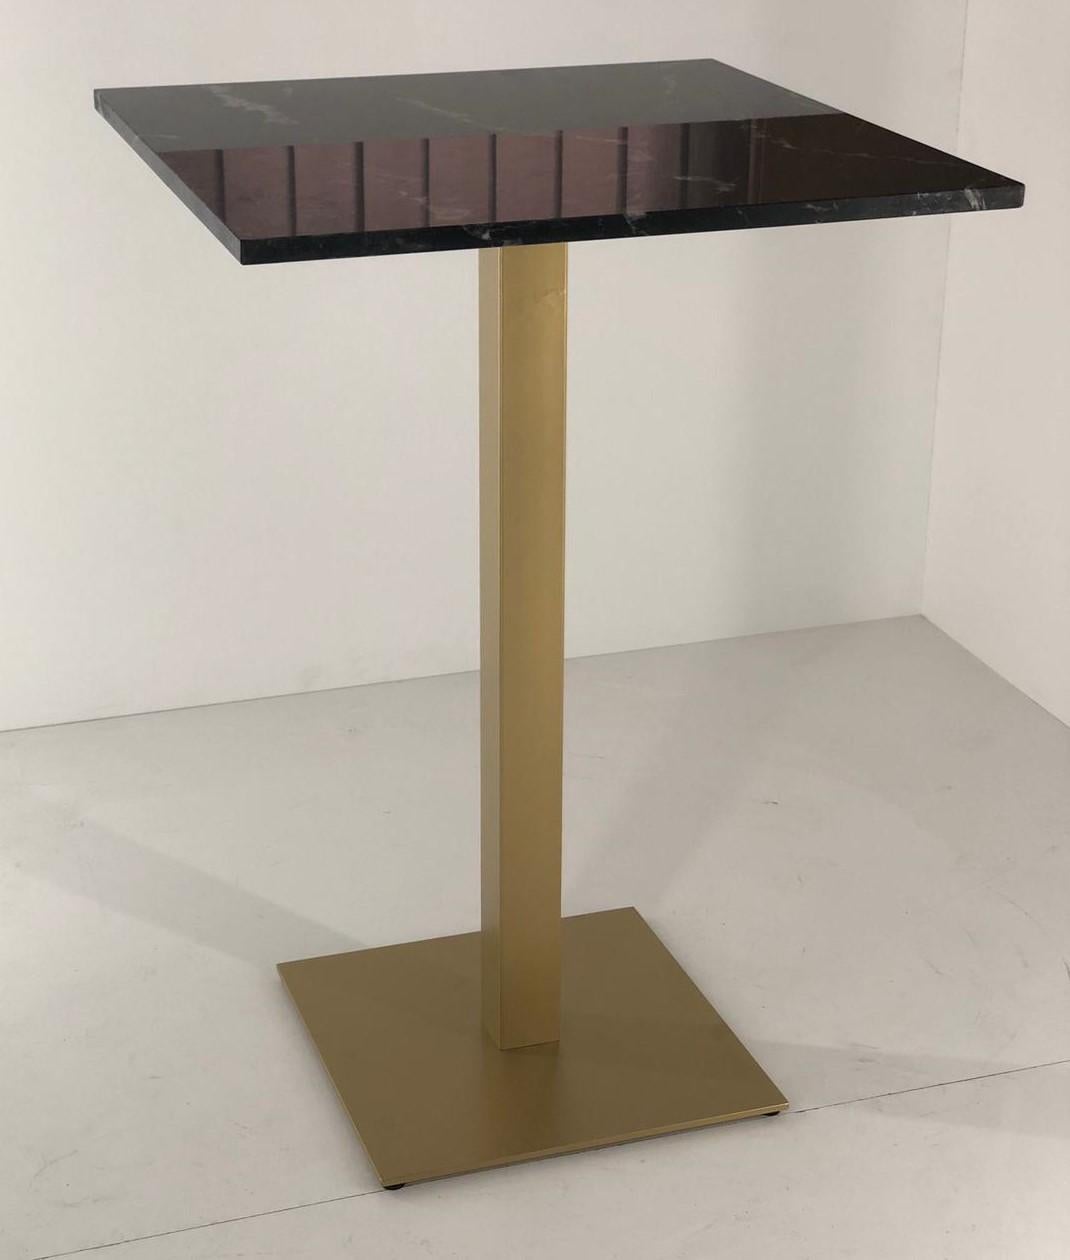 Nouvelle table haute bistrot en fer forgé doré avec plateau en marbre noir.

Intérieur et extérieur